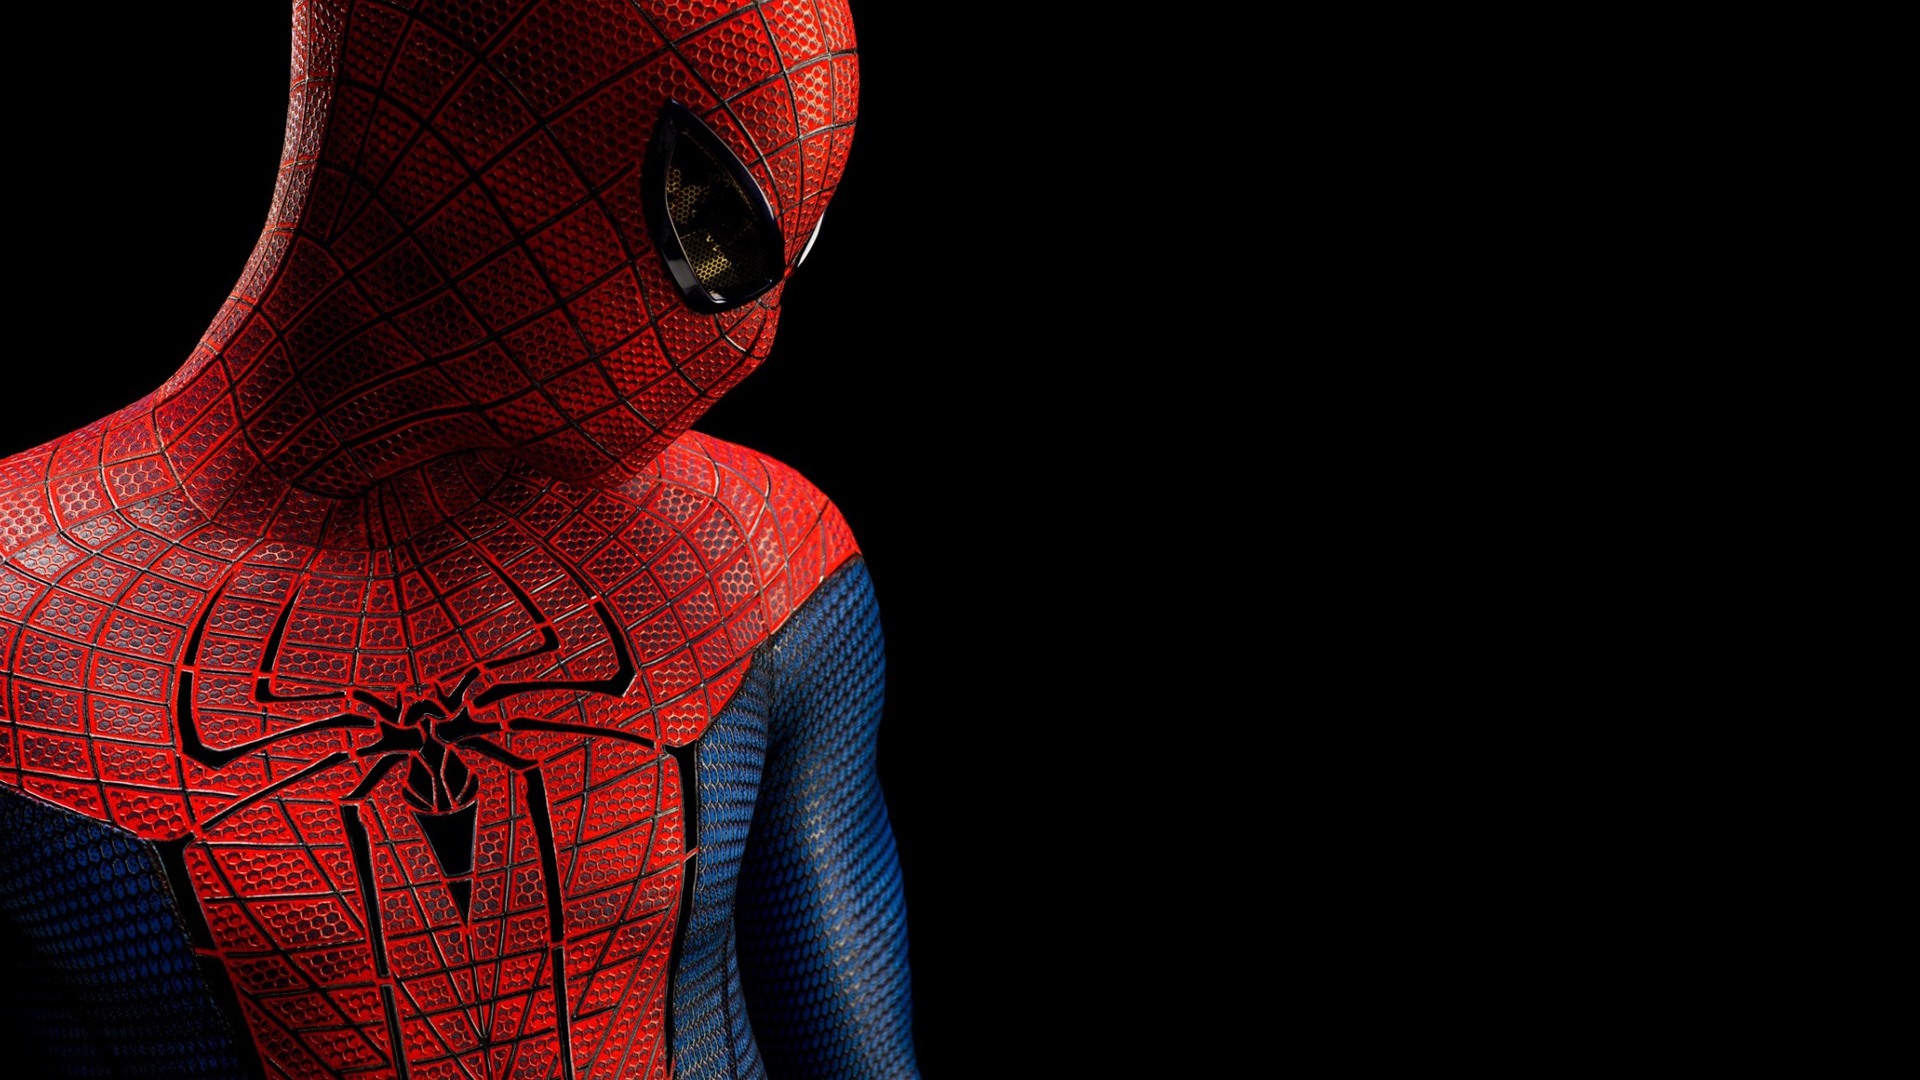 The Amazing Spider-Man 2012 惊奇蜘蛛侠2012 壁纸专辑14 - 1920x1080